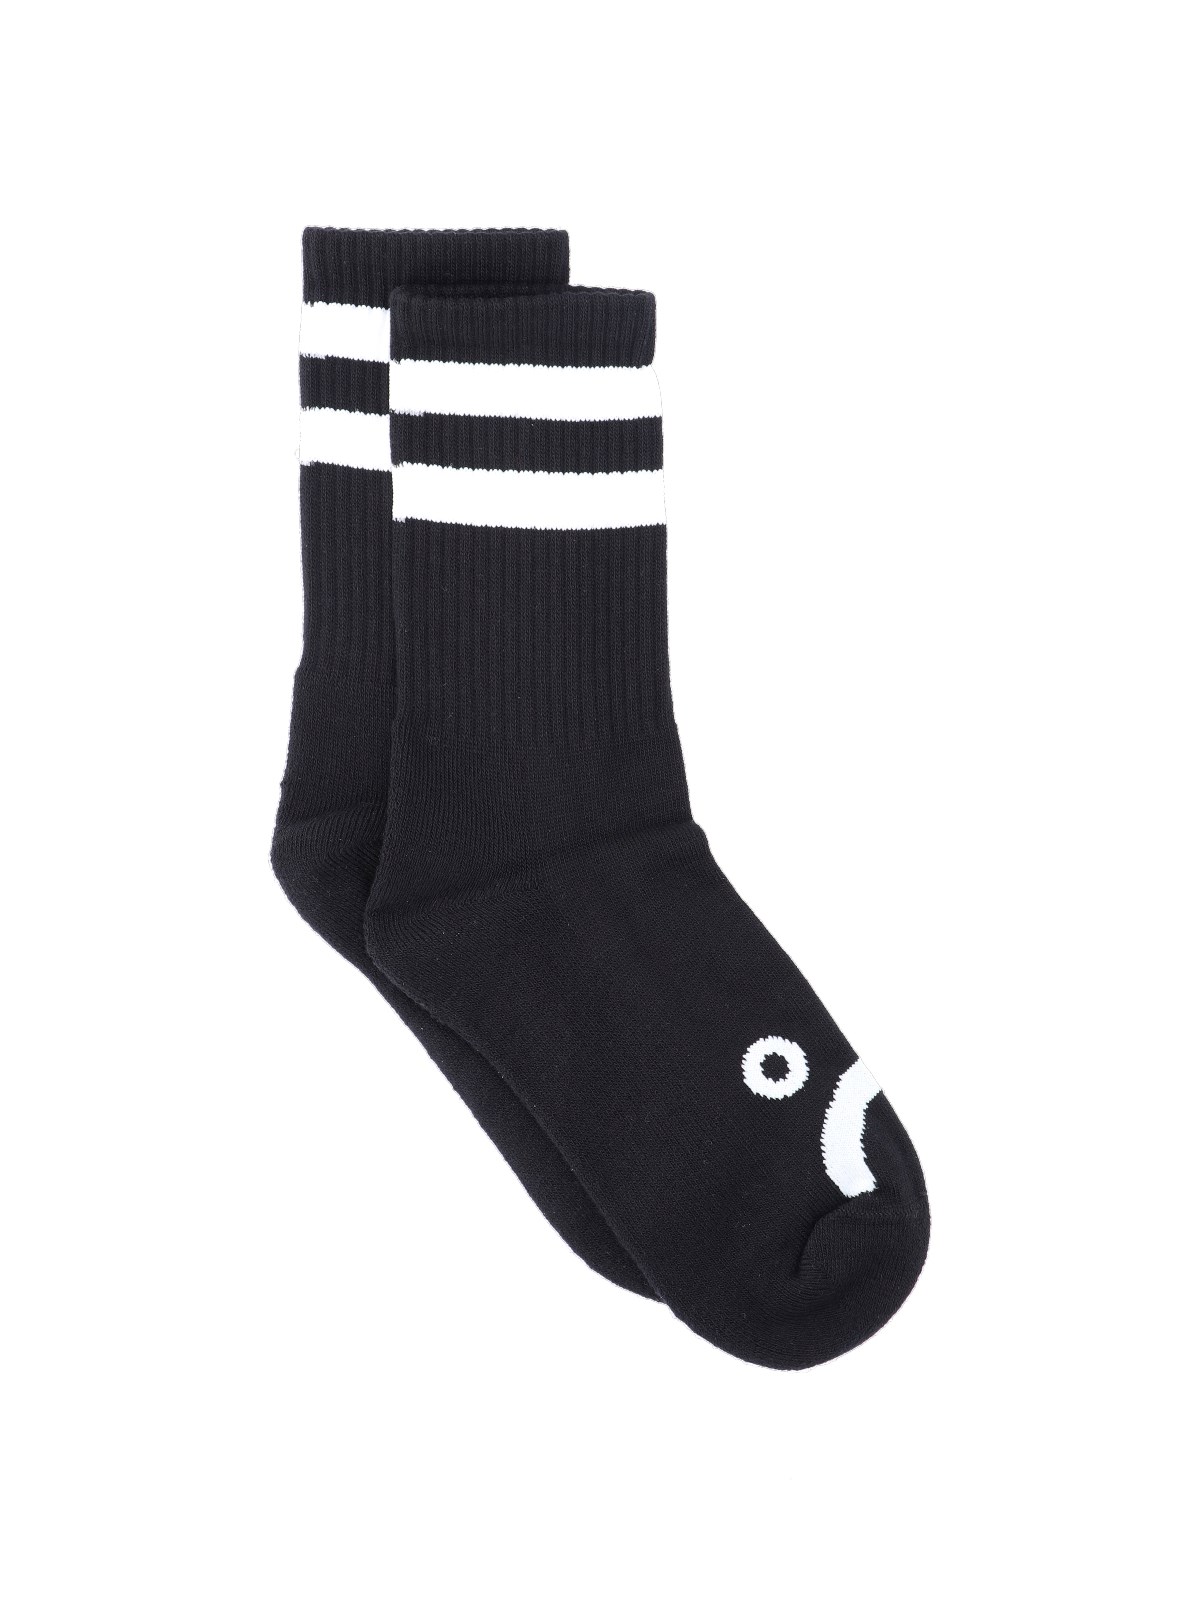 Polar Skate 'happy-sad' Socks In Black  